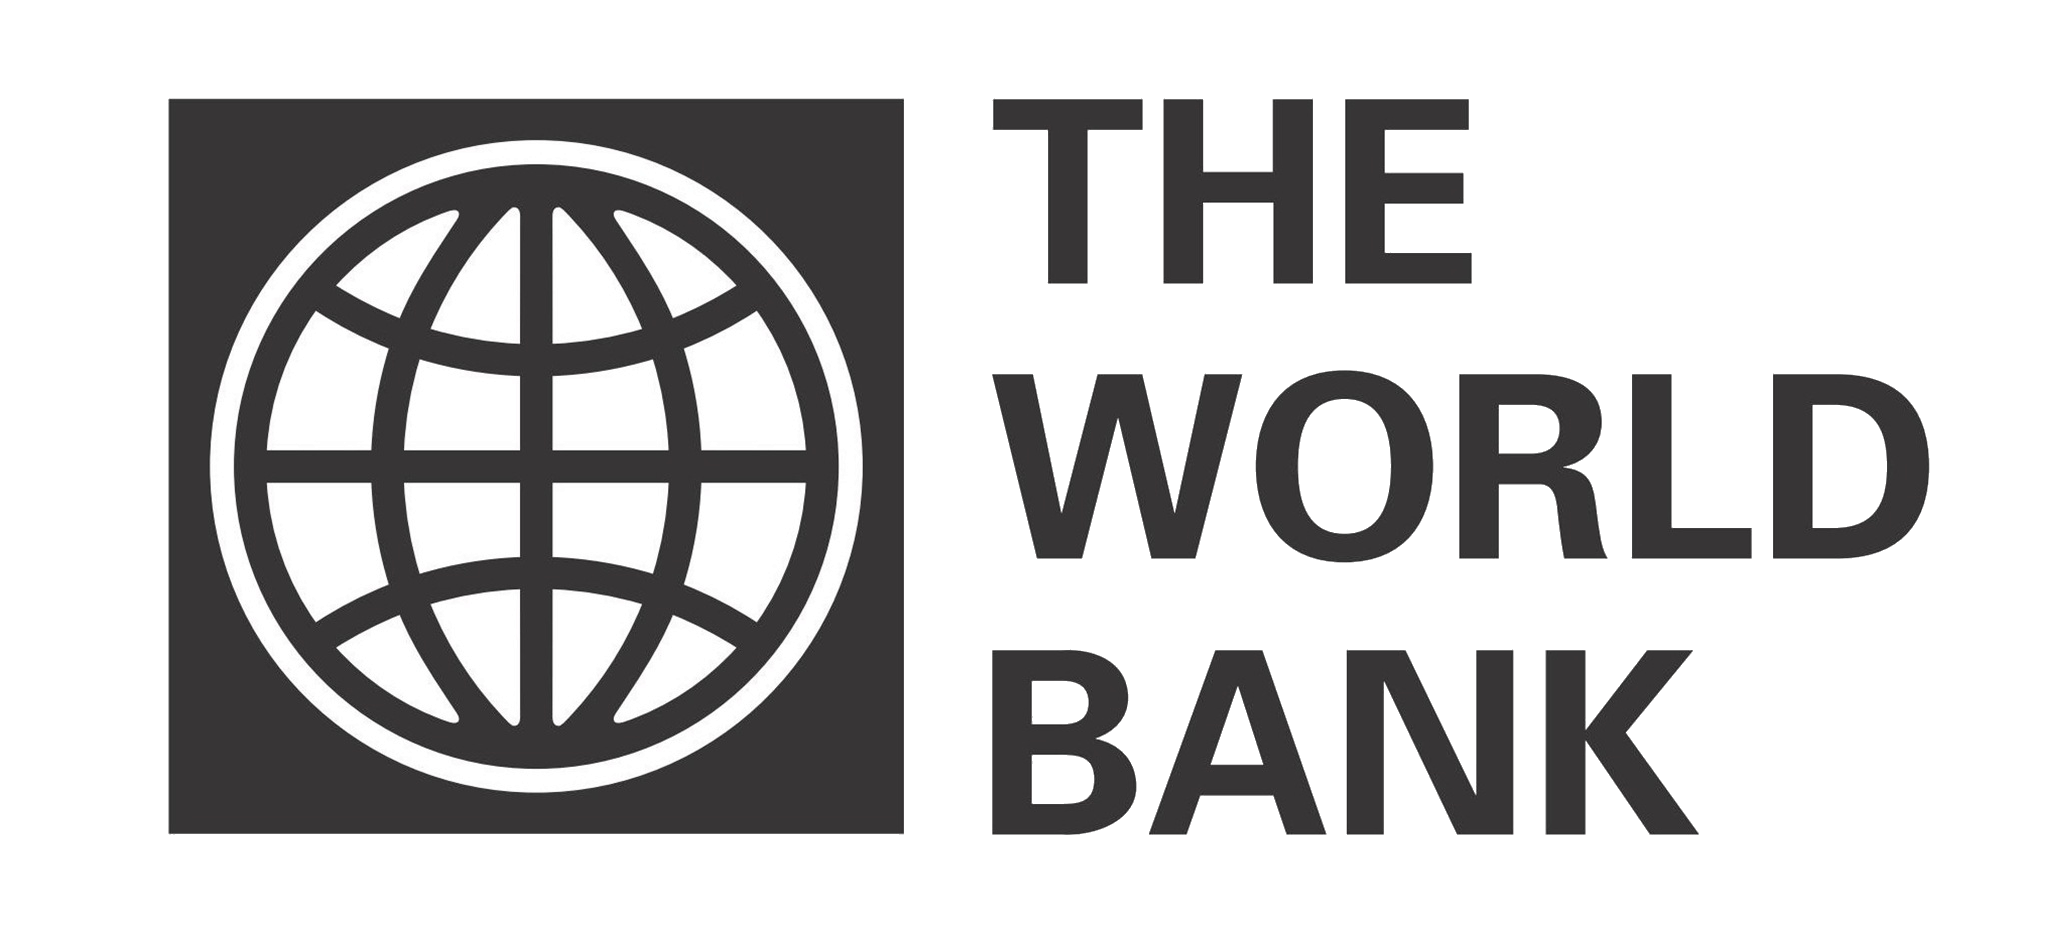 Какой всемирный банк. Группа Всемирного банка эмблема. Всемирного банка (the World Bank). Всемирный банк США. Всемирный банк картинки.